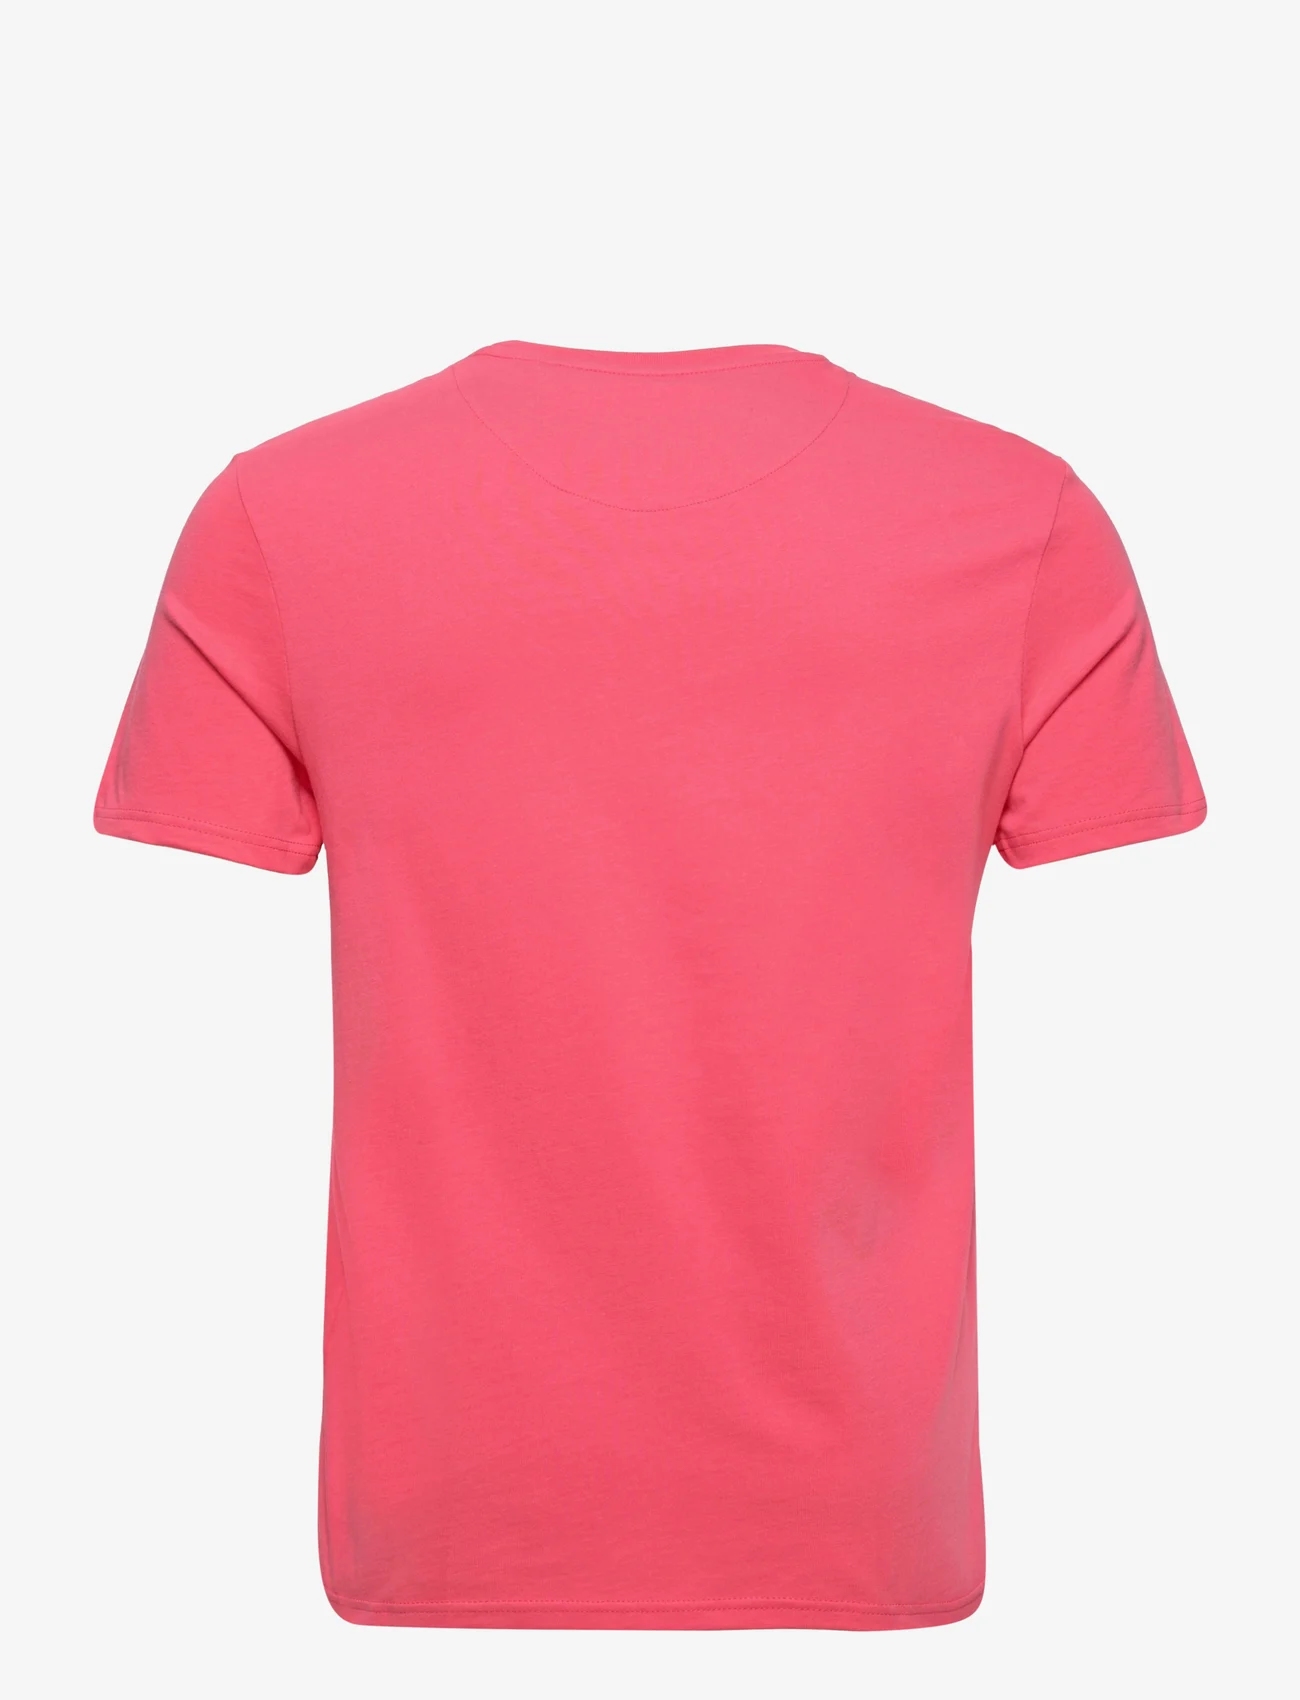 Lyle & Scott - Plain T-Shirt - die niedrigsten preise - electric pink - 1